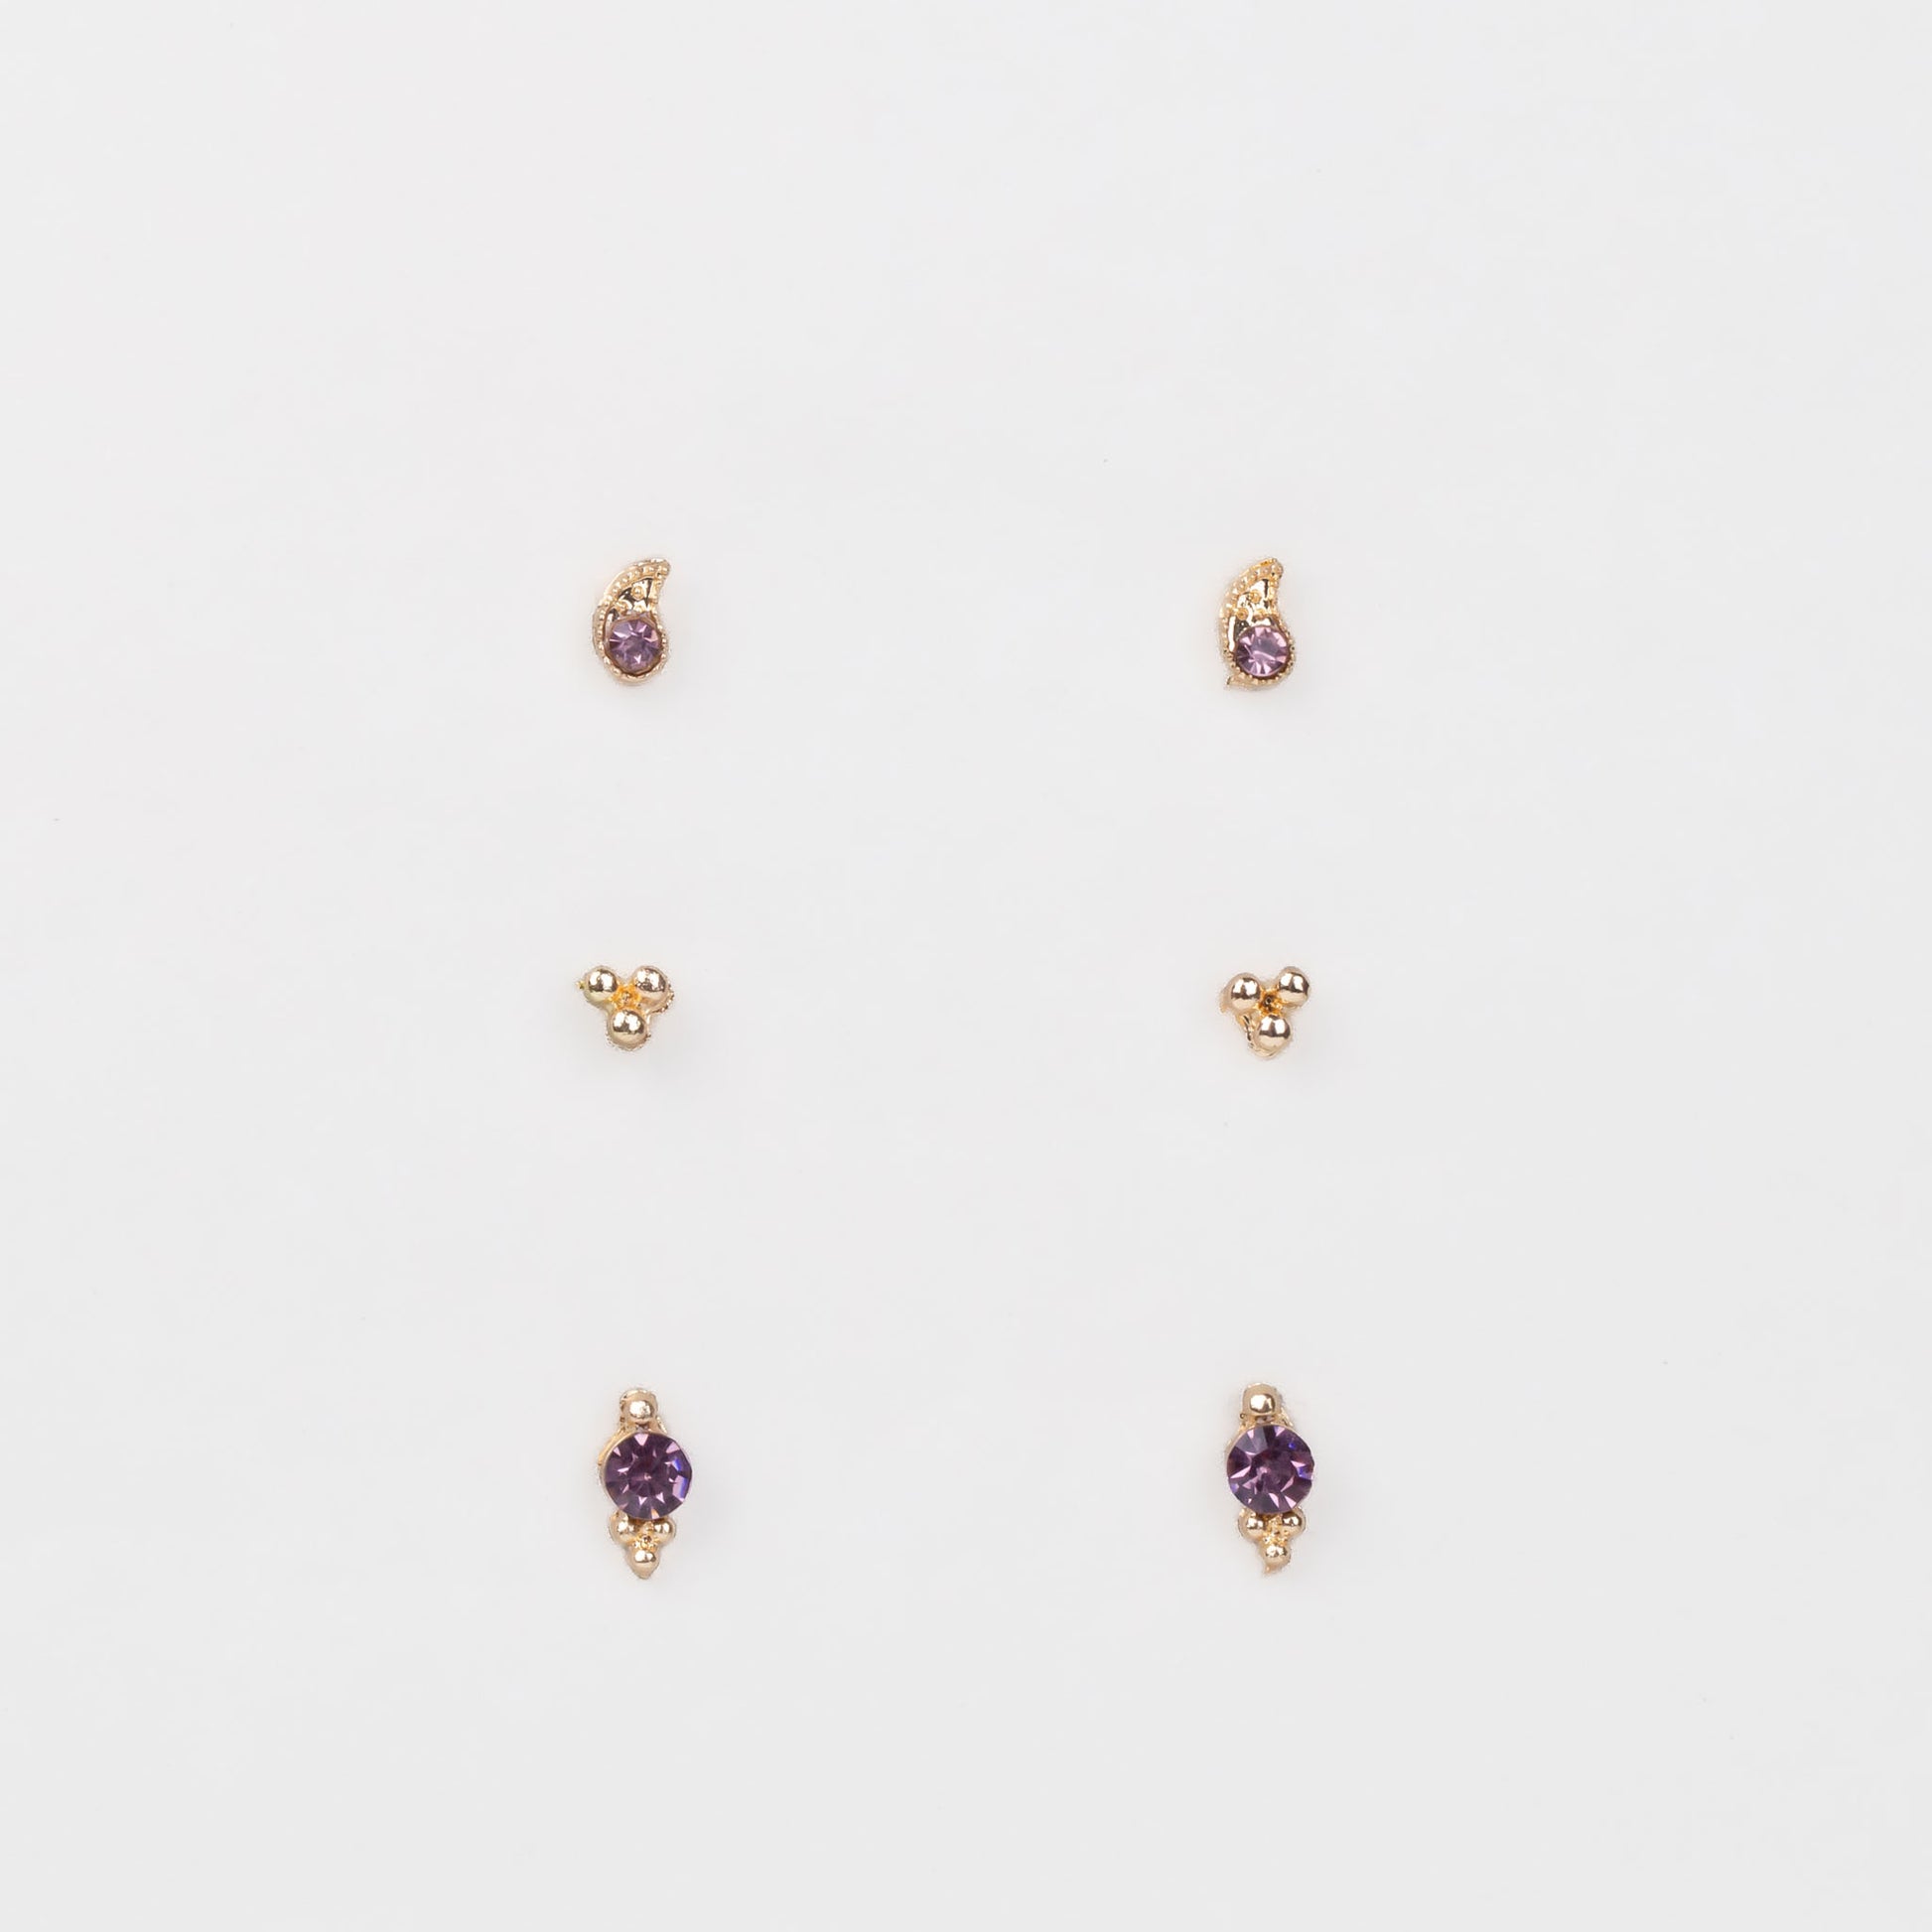 Cercei mici aurii discreți cu formă de lacrimă, amuletă și pietre, set 3 perechi - Mov